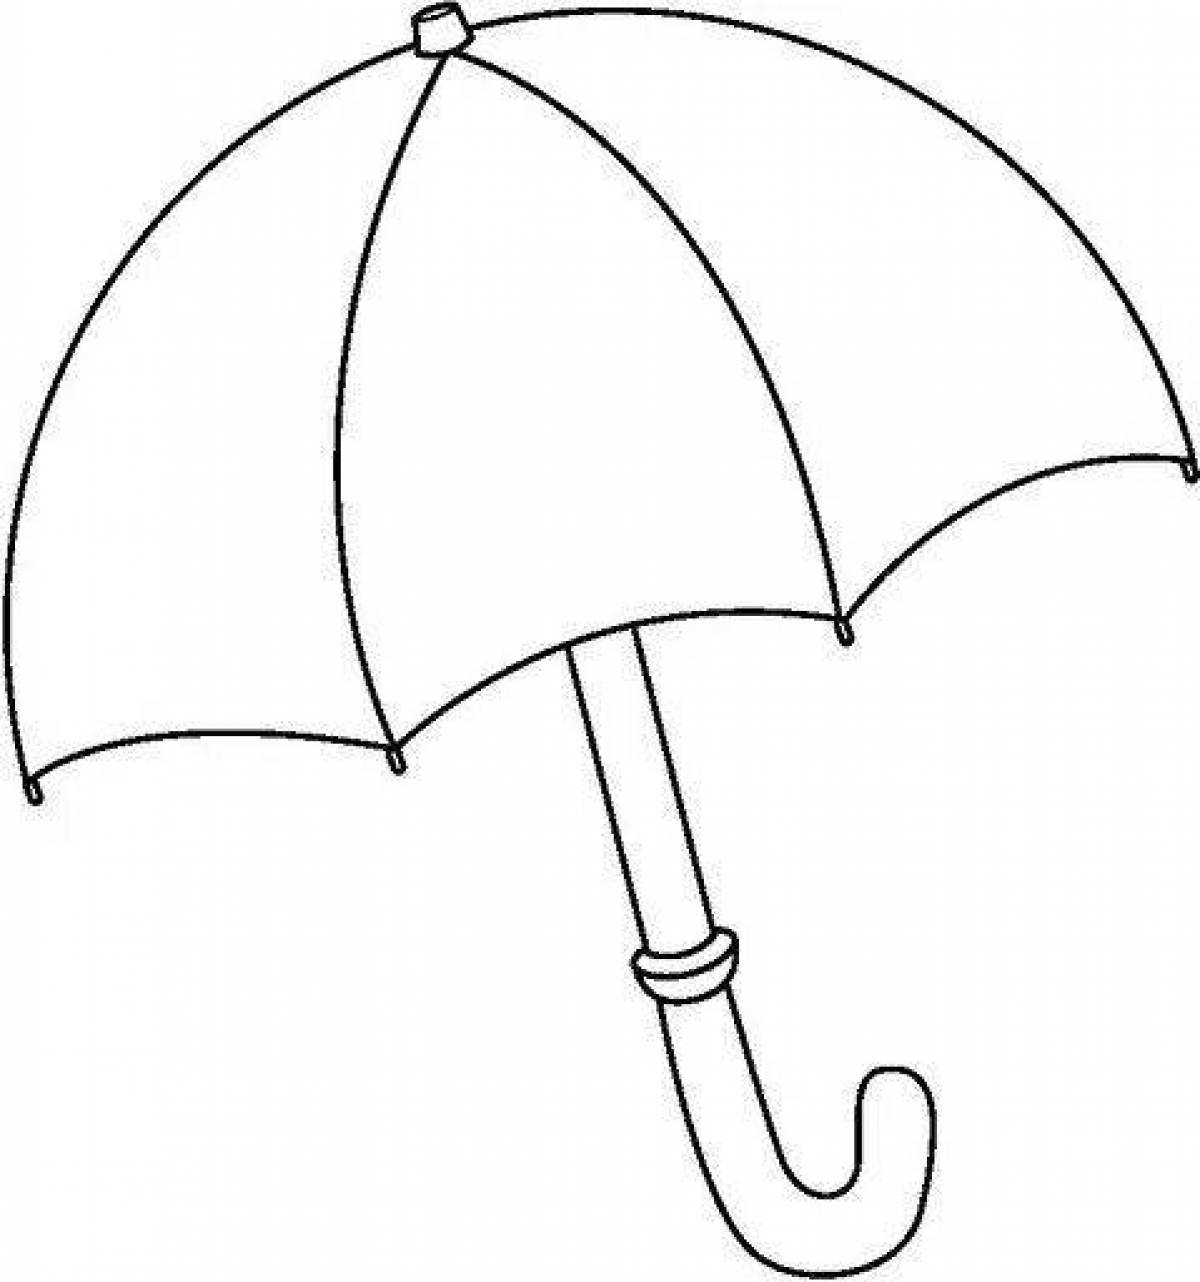 Детский зонт раскраска ZEST 21581-256